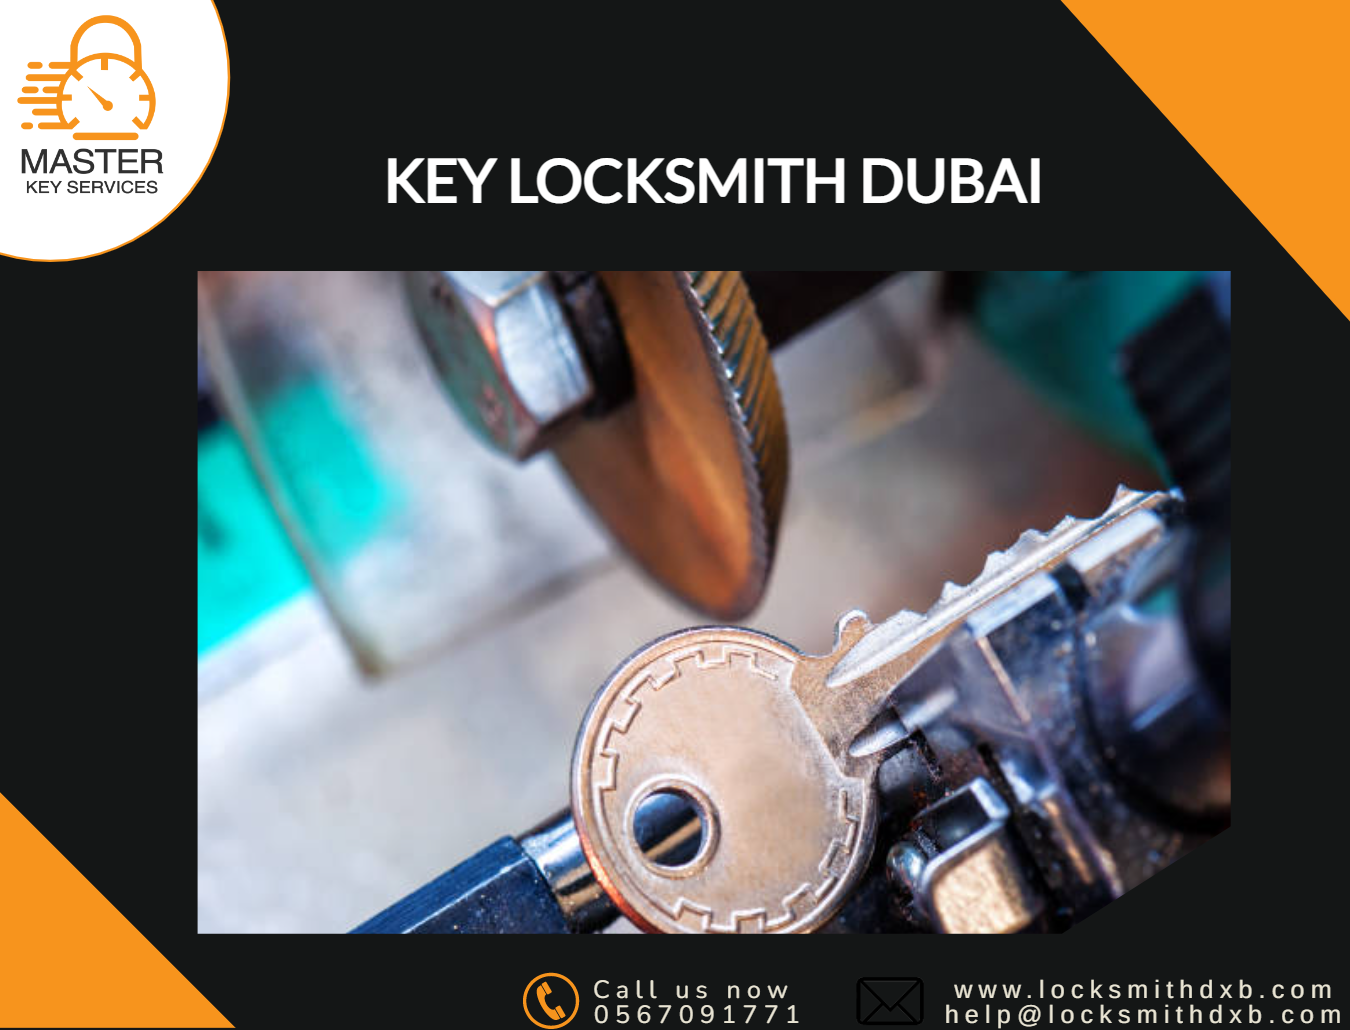 Key locksmith Dubai